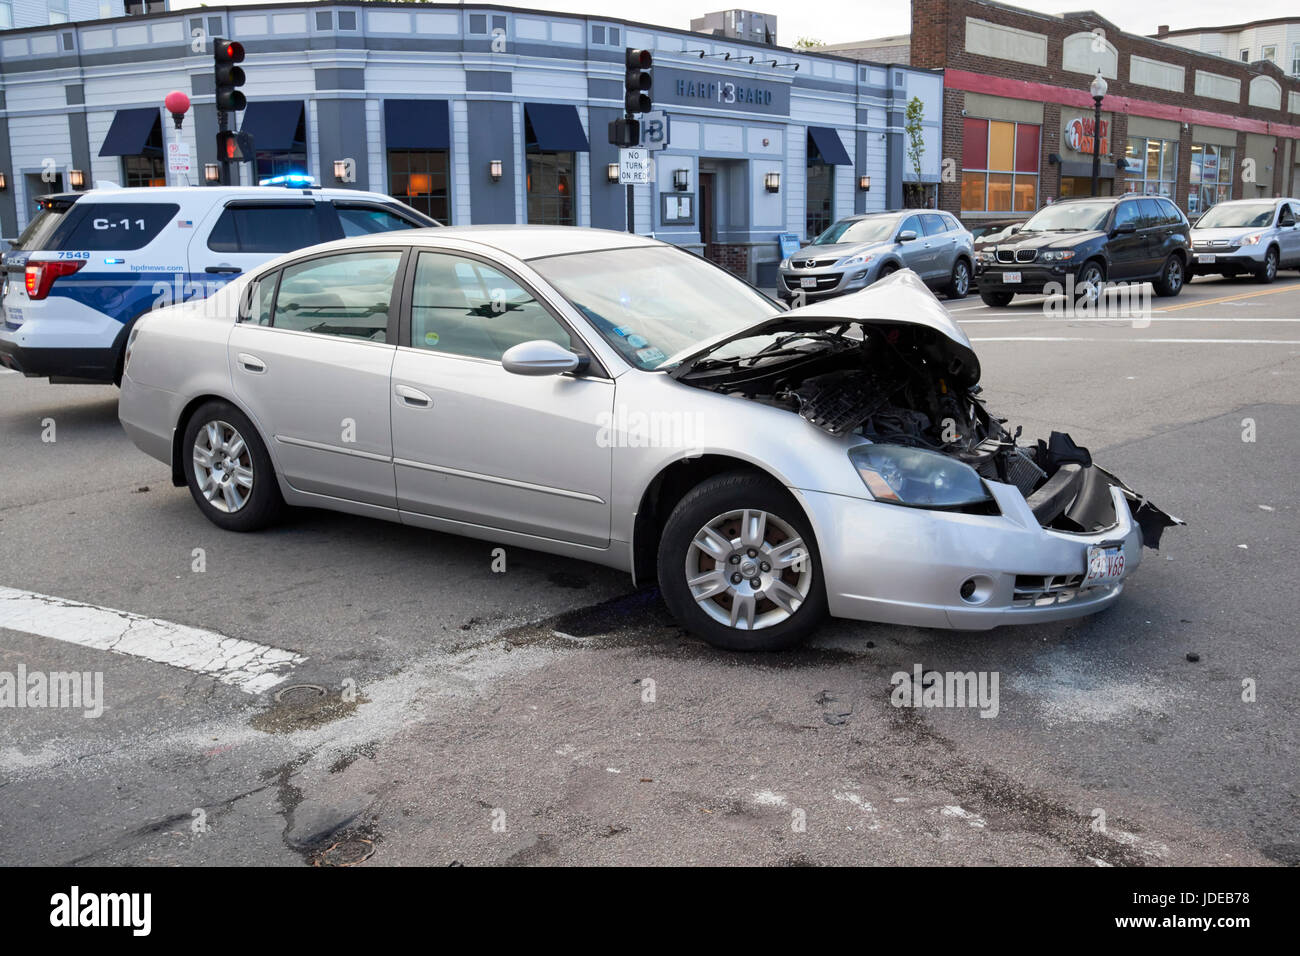 Incidente auto danneggiata immobilizzato a causa di crash a incrocio nella periferia di Boston STATI UNITI D'AMERICA Foto Stock